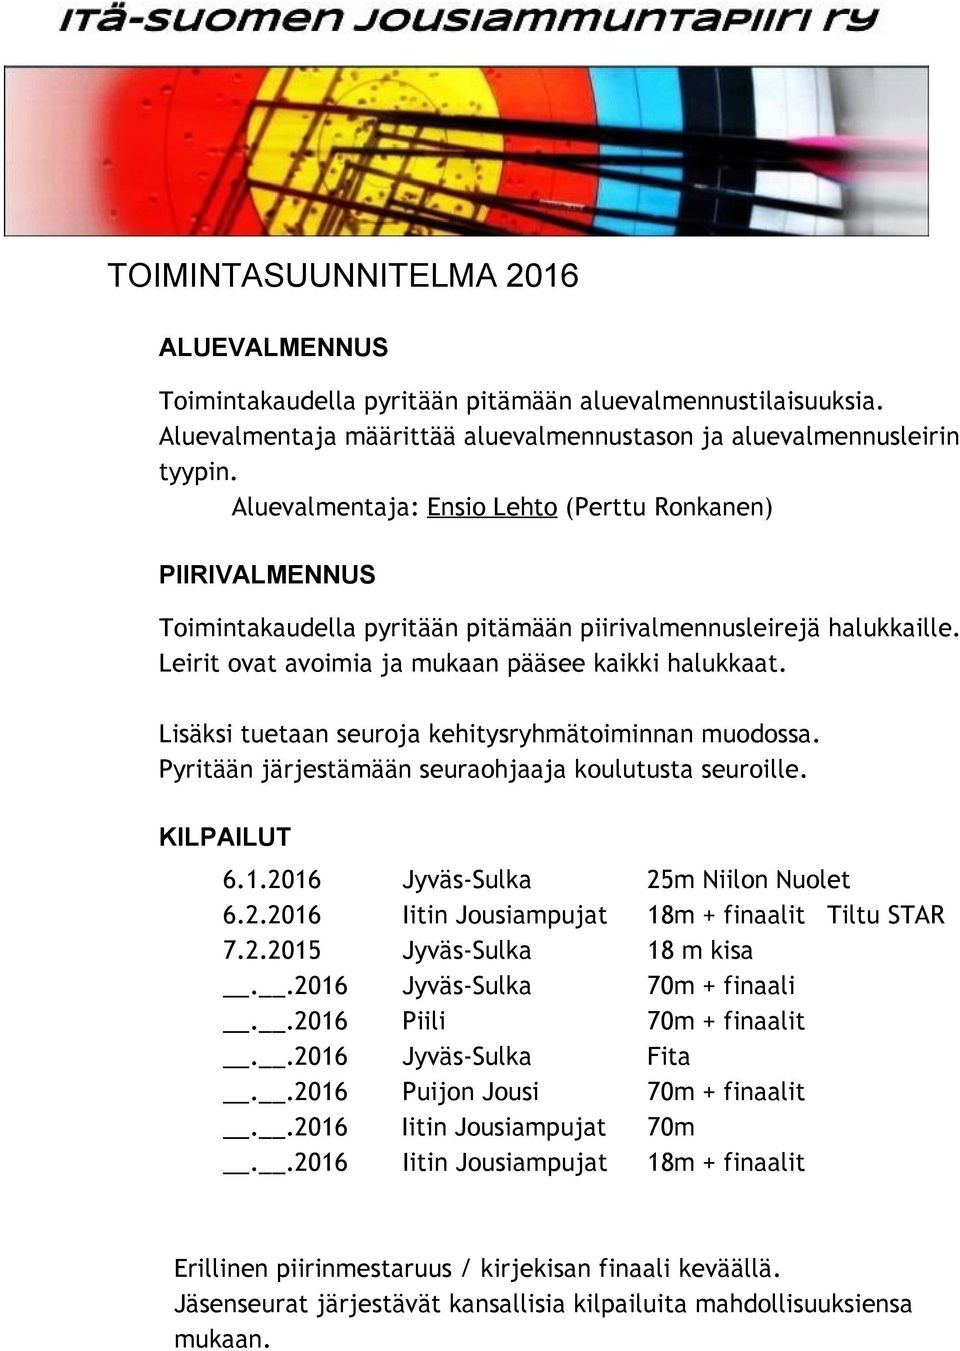 Lisäksi tuetaan seuroja kehitysryhmätoiminnan muodossa. Pyritään järjestämään seuraohjaaja koulutusta seuroille. KILPAILUT 6.1.2016 Jyväs-Sulka 25m Niilon Nuolet 6.2.2016 Iitin Jousiampujat 18m + finaalit Tiltu STAR 7.